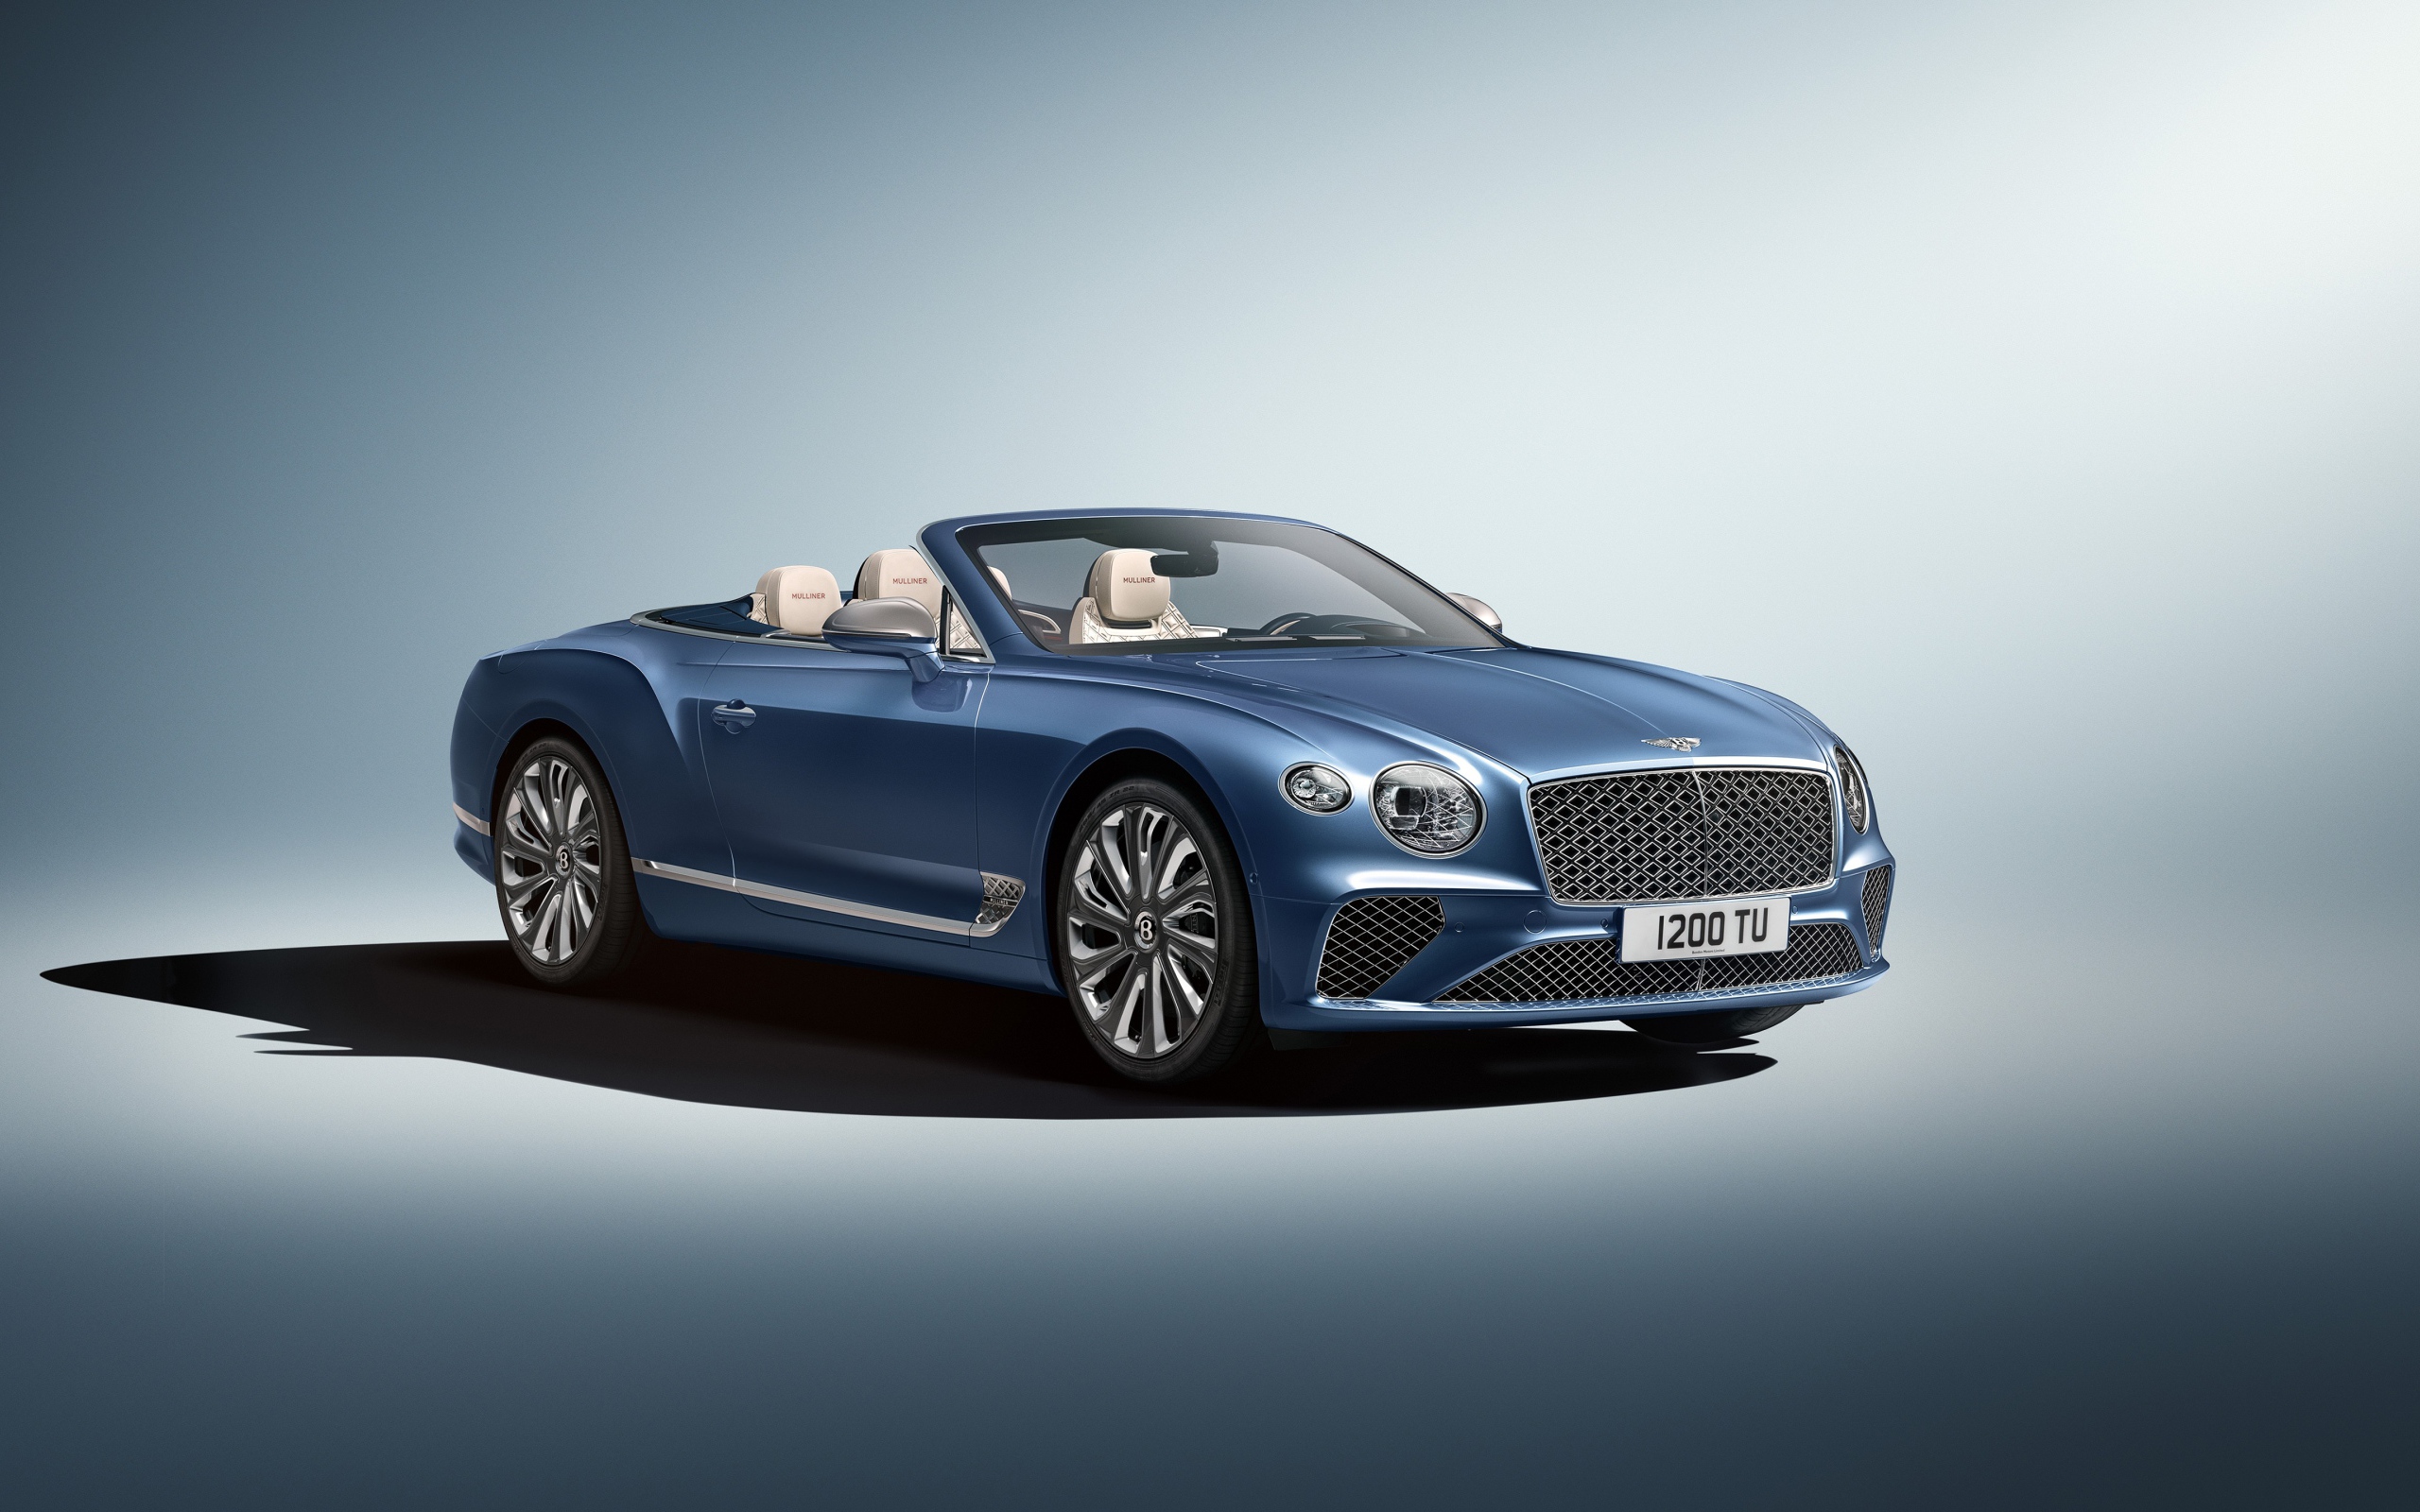 Автомобиль Bentley Continental GT Mulliner Convertible 2020 года на сером фоне